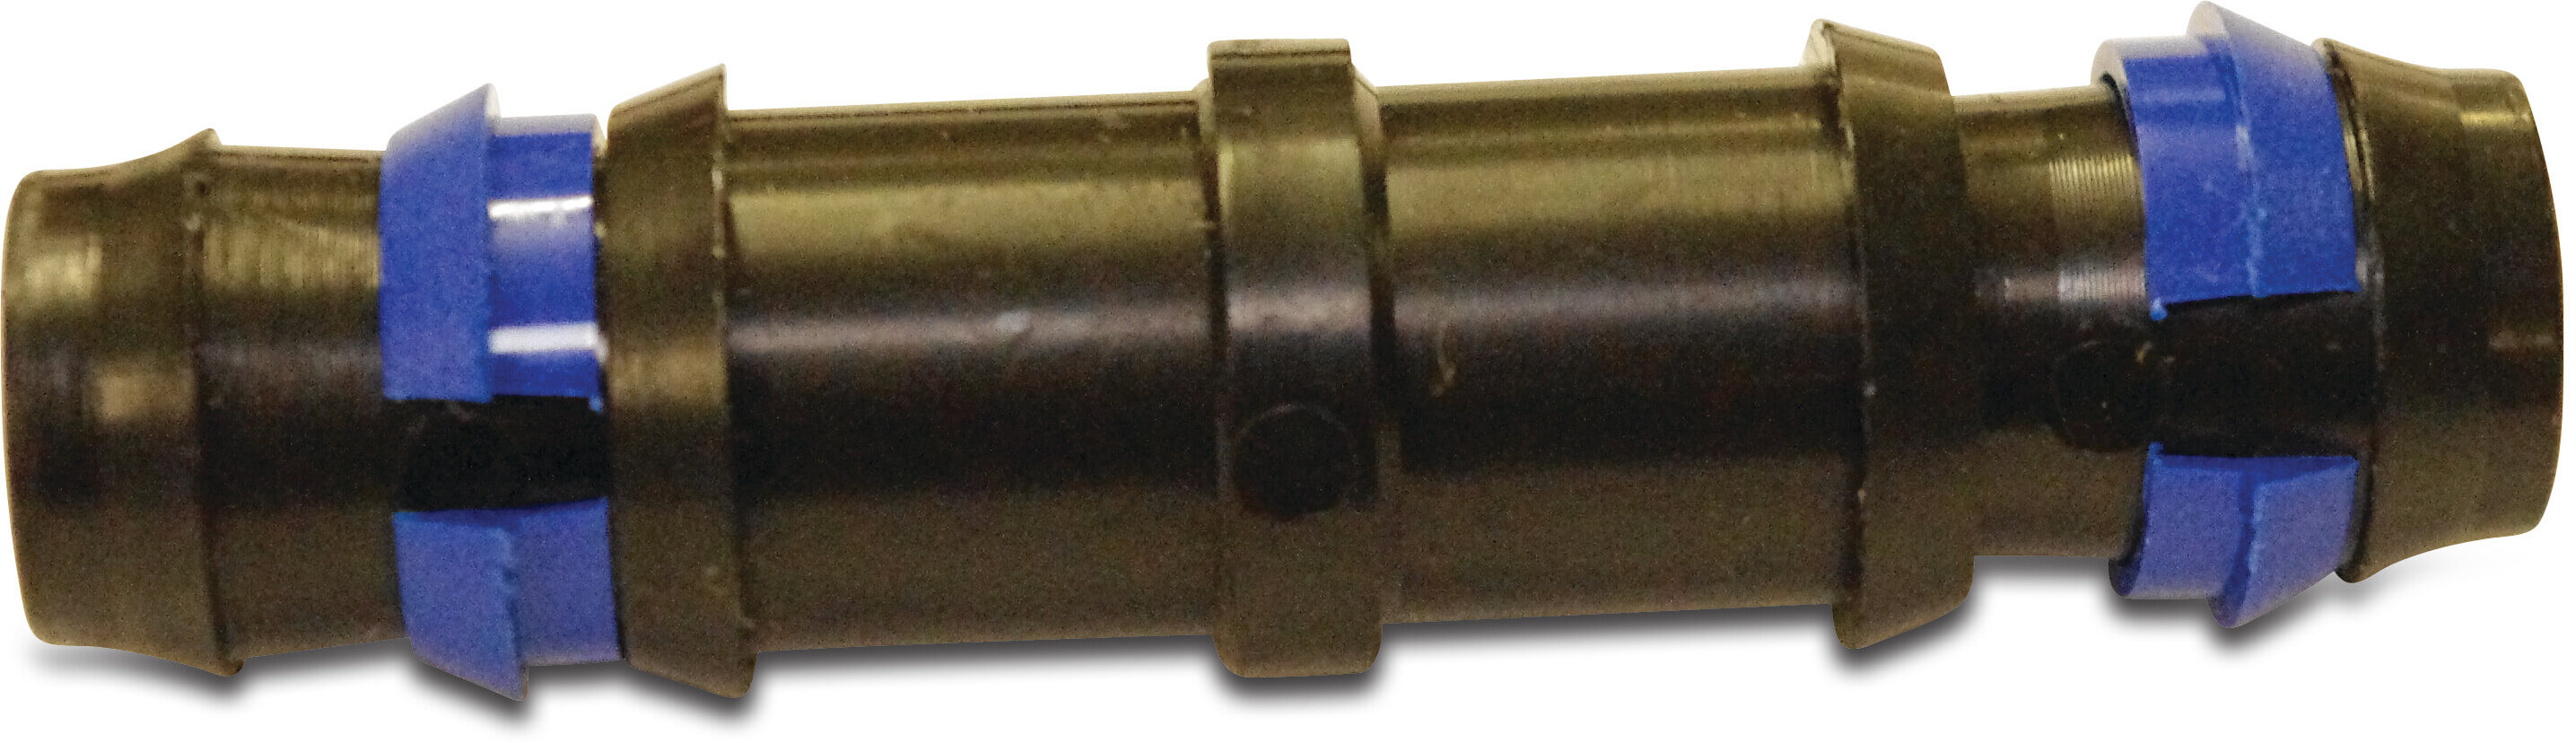 Schlauchverbinder PP 16 mm Tülle 4bar type zerreißfest P1